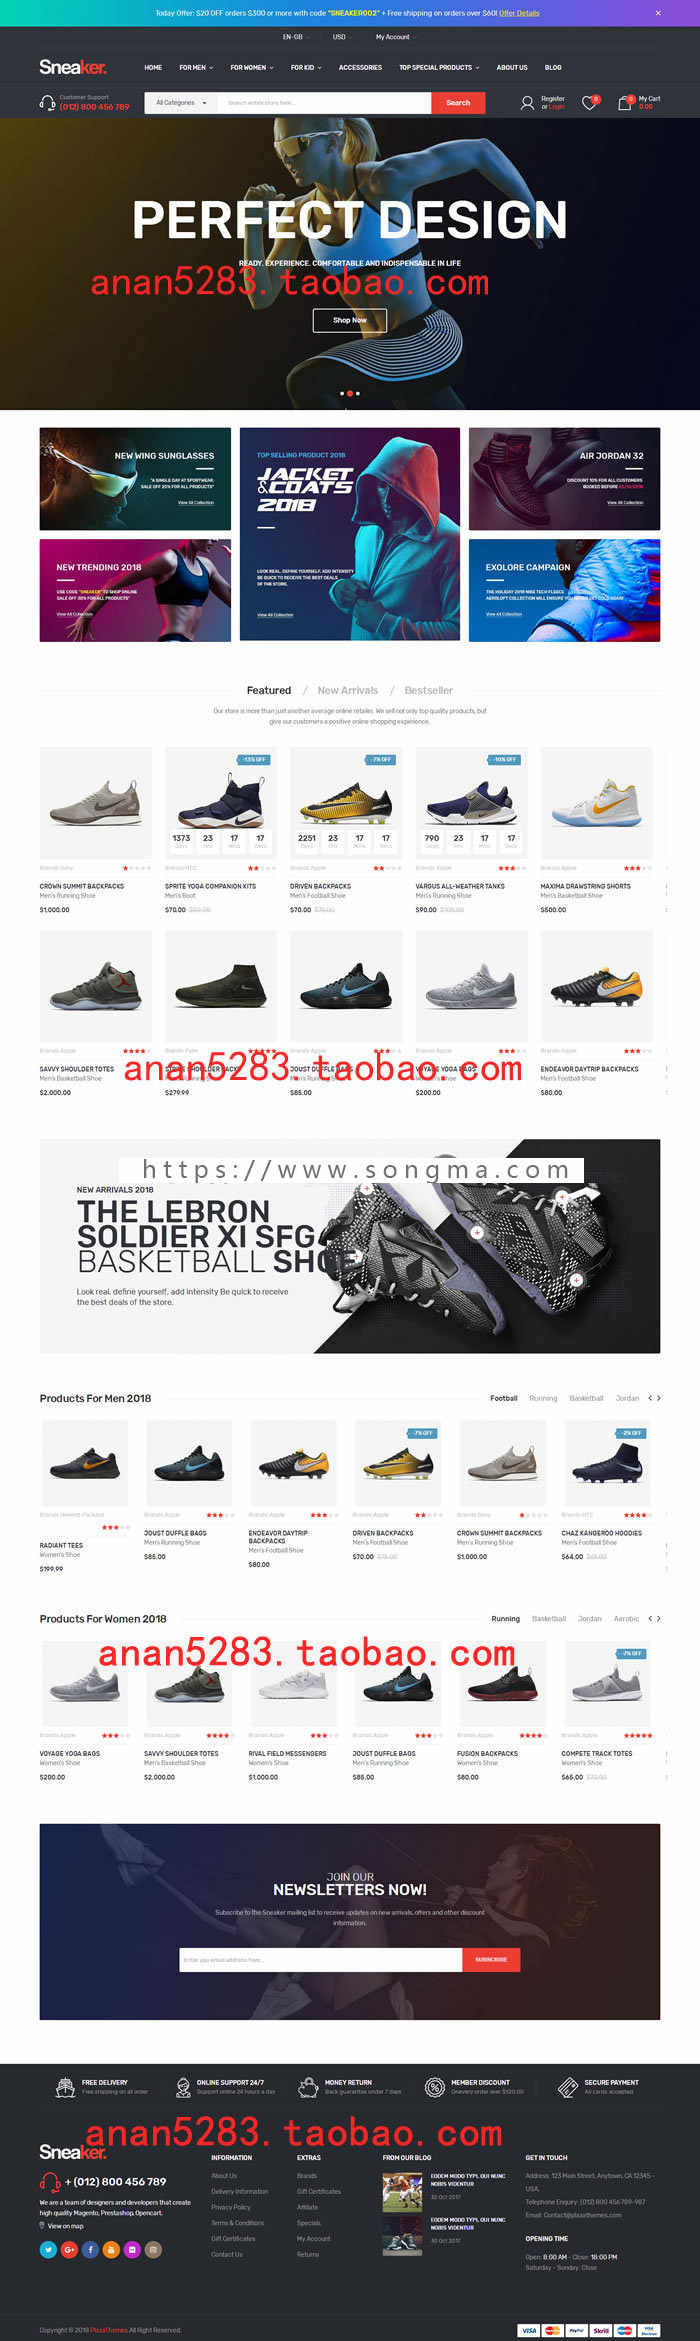 外贸模板国外中英文商城网站购物站男鞋运动鞋PHP源码包安装售后